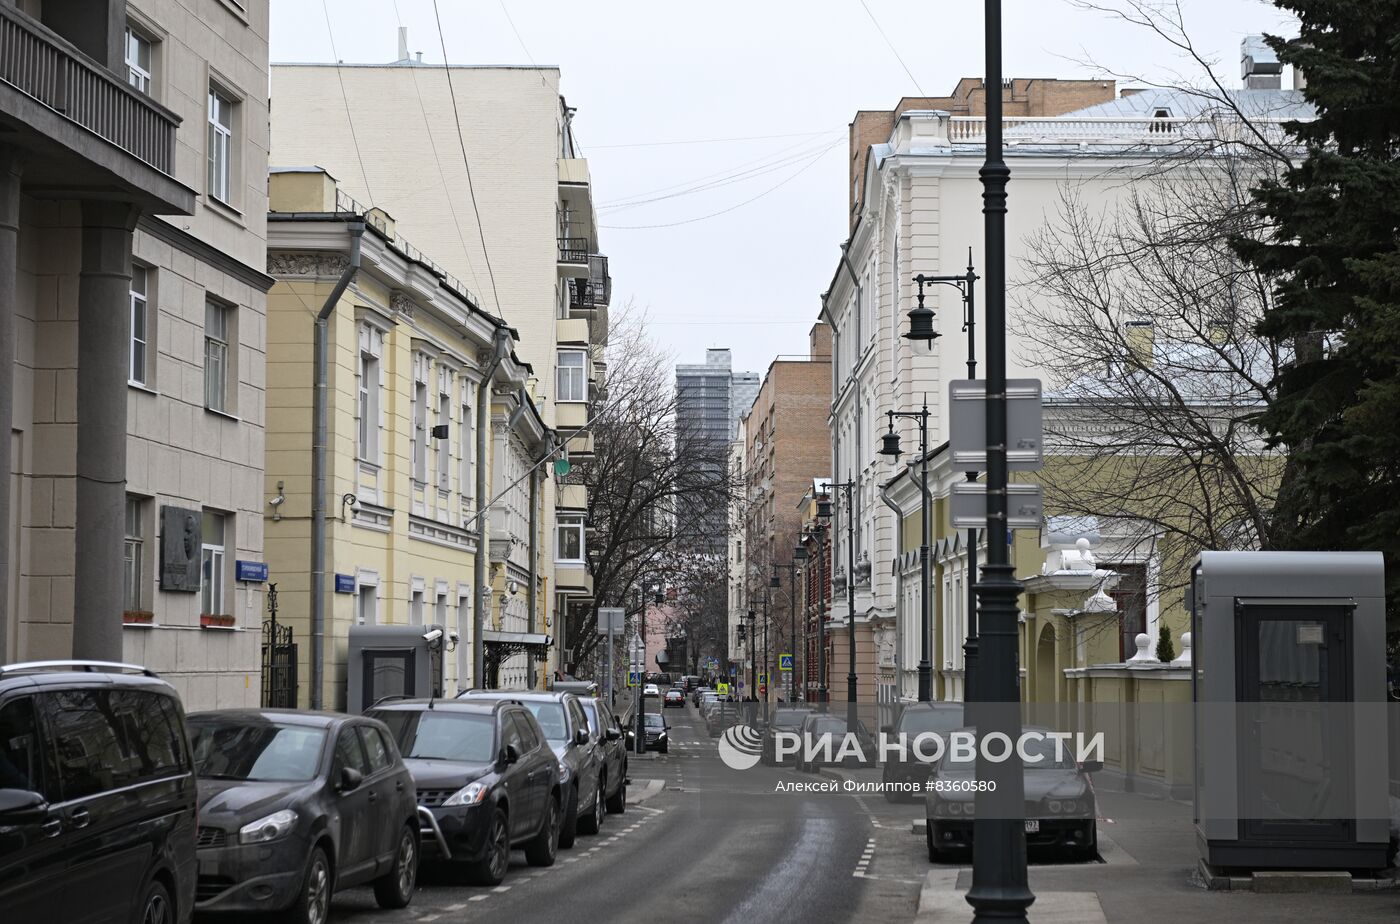 Московские улицы